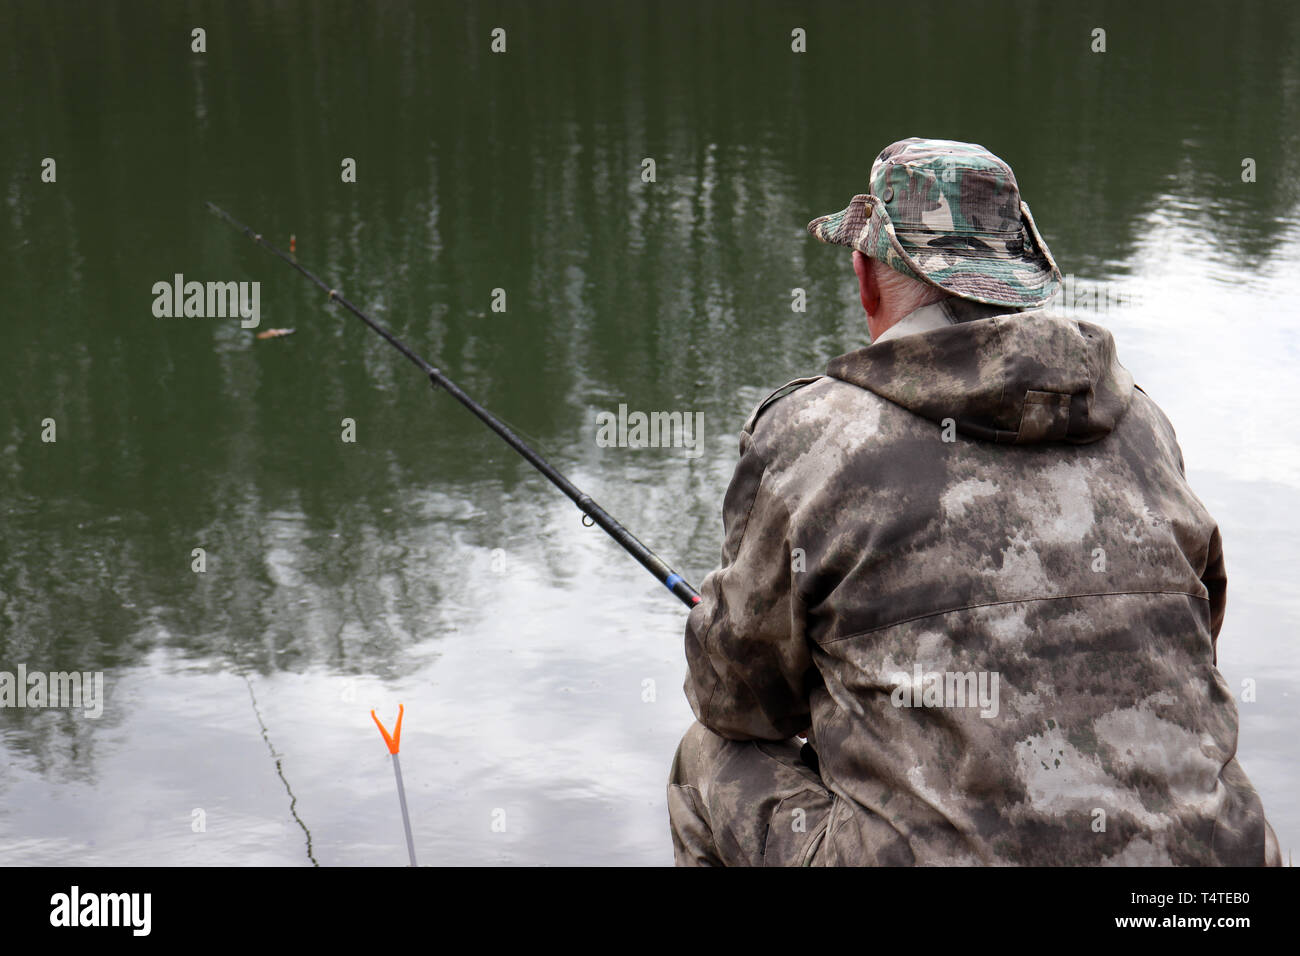 Vêtements de chasse au pêcheur assis avec une canne à pêche sur la rive. La pêche à l'homme sur le lac au printemps, les arbres se reflètent dans l'eau Banque D'Images